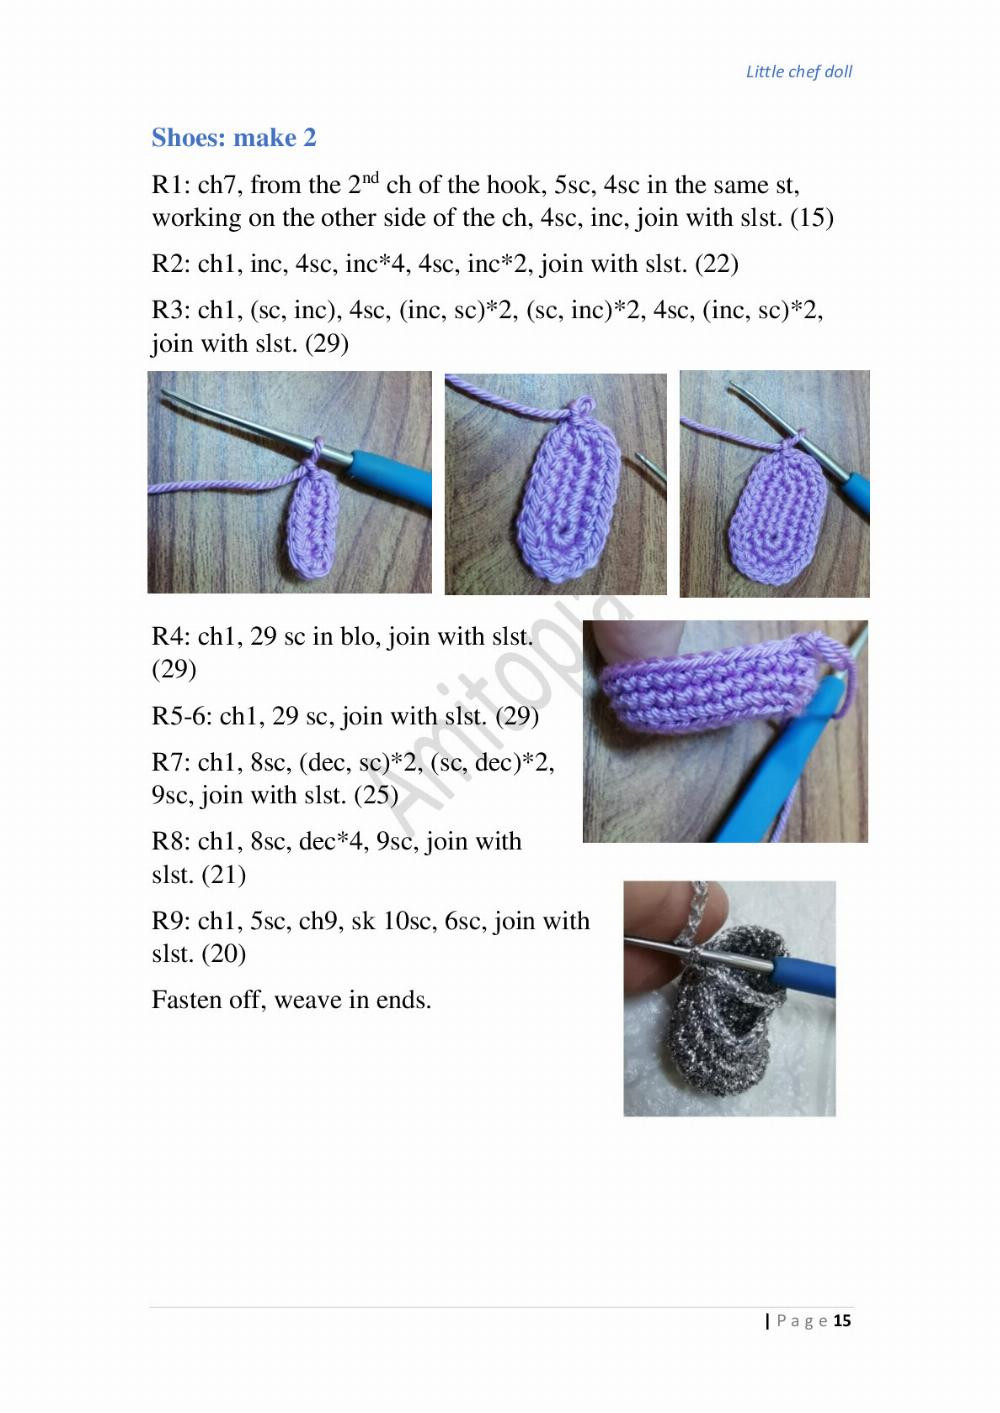 LITTLE CHEF DOLL crochet pattern